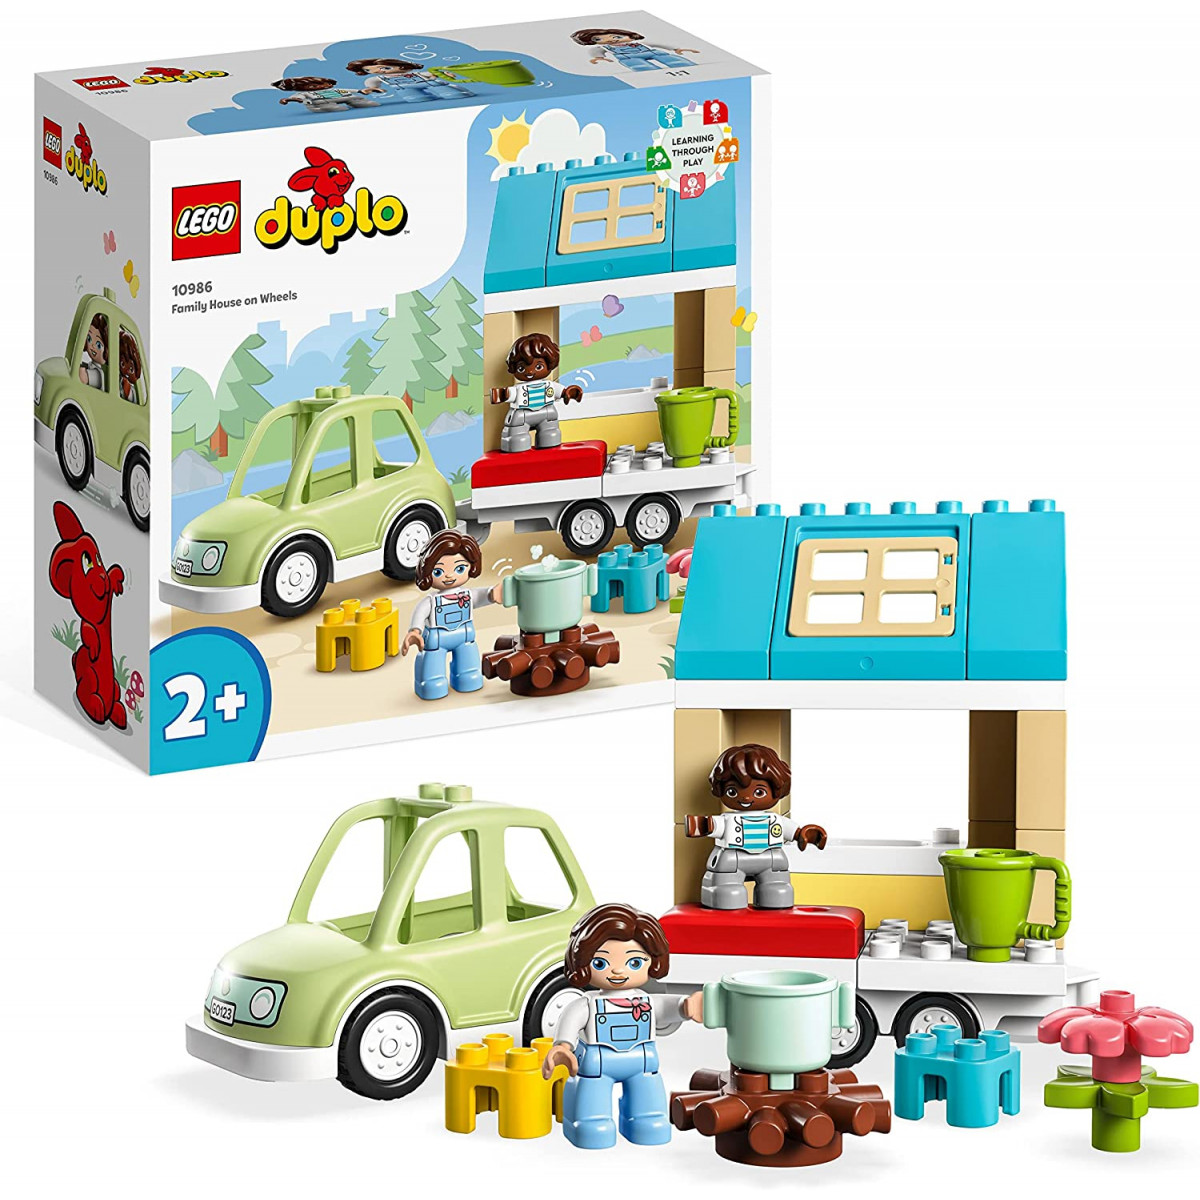 Lego Duplo 10986 - Town Family House on Wheels